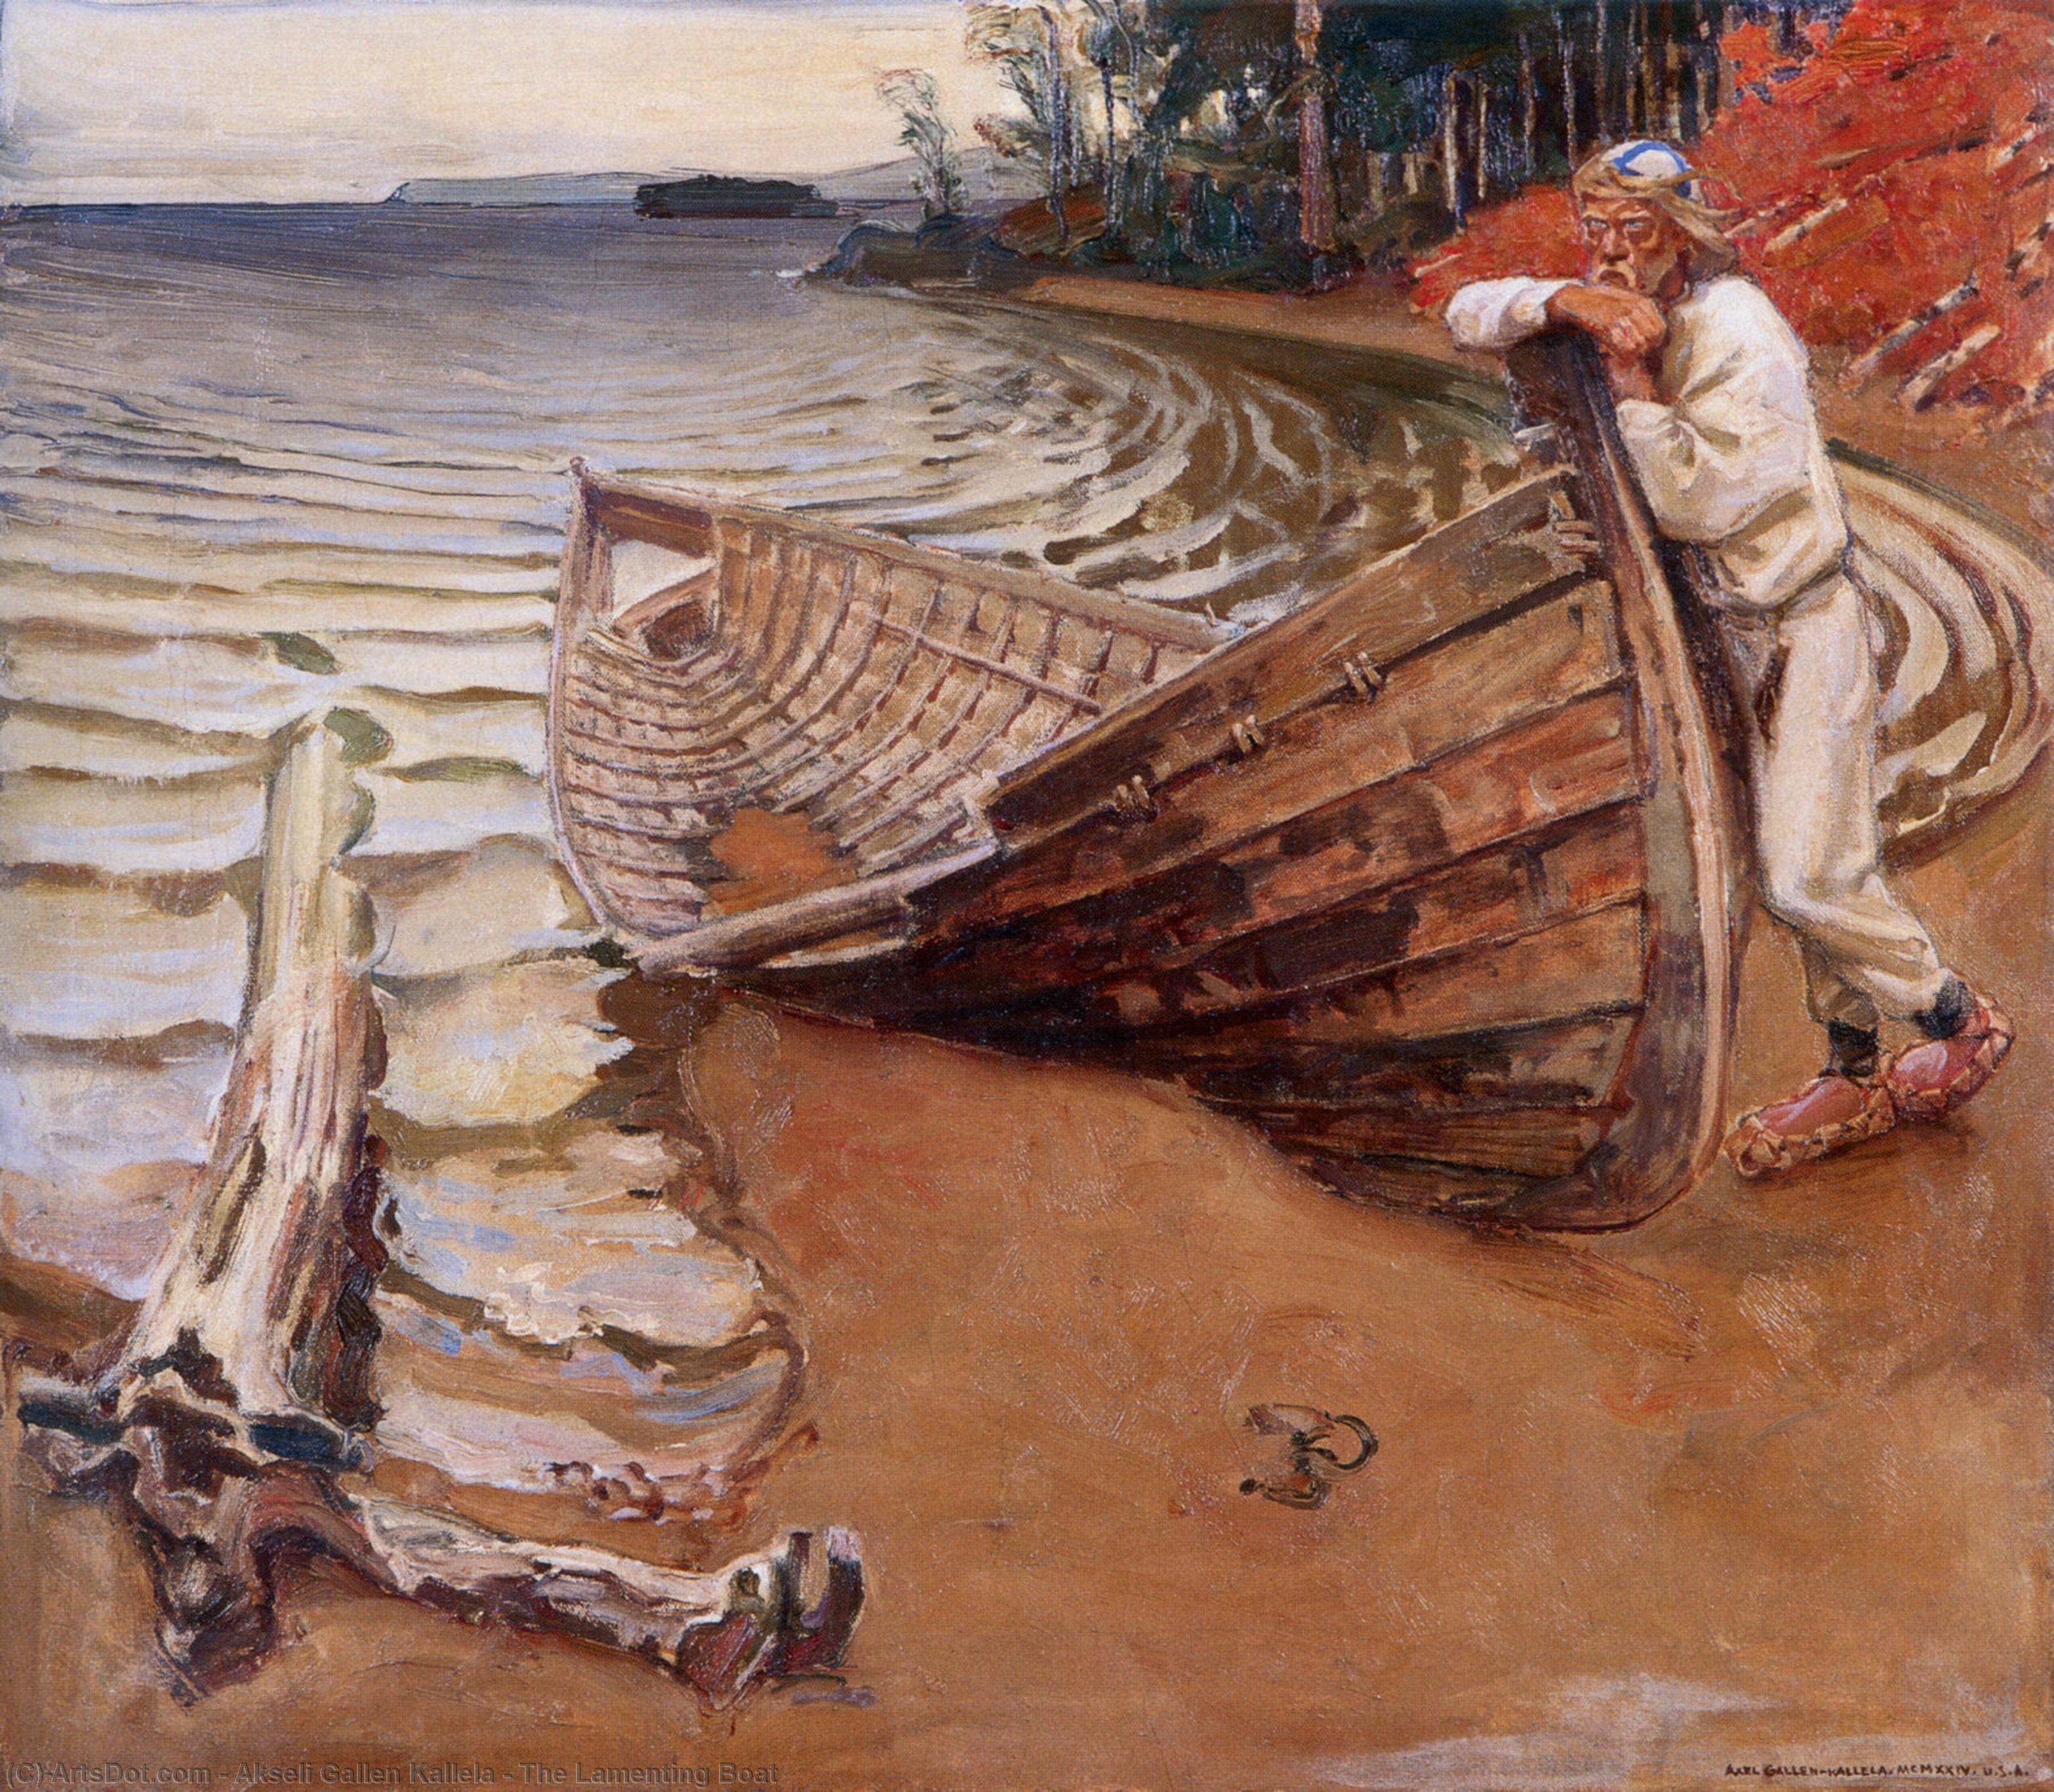 WikiOO.org - Encyclopedia of Fine Arts - Malba, Artwork Akseli Gallen Kallela - The Lamenting Boat